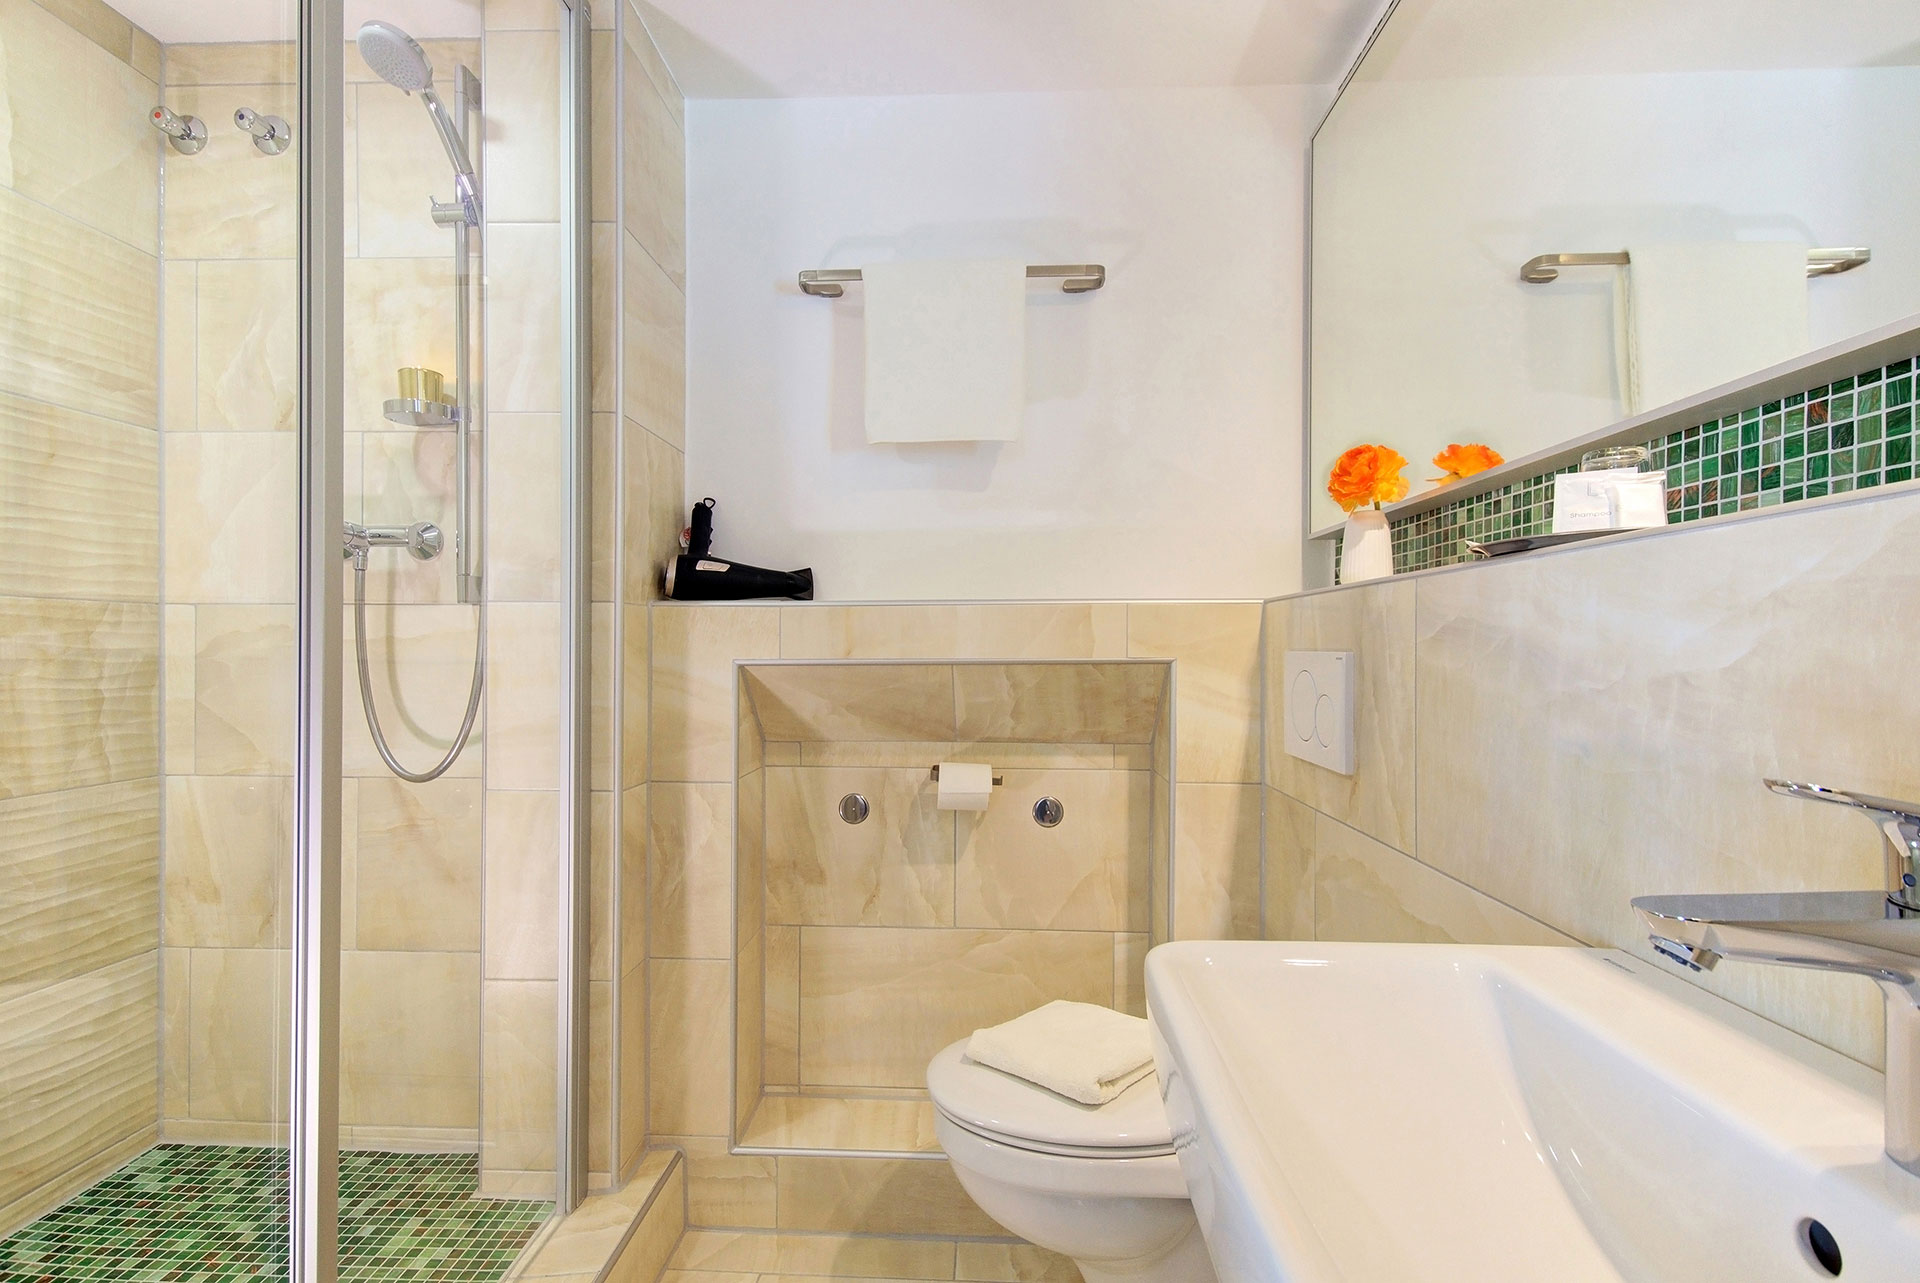 hotelfotograf Badezimmer frontal mit blick auf fön und kleine orangefarbene blume